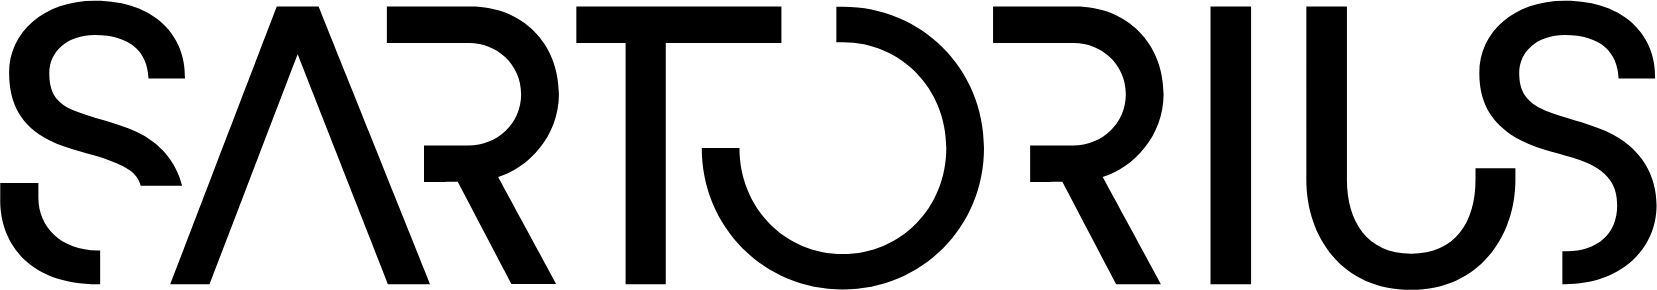 Sartorius logo large (transparent PNG)